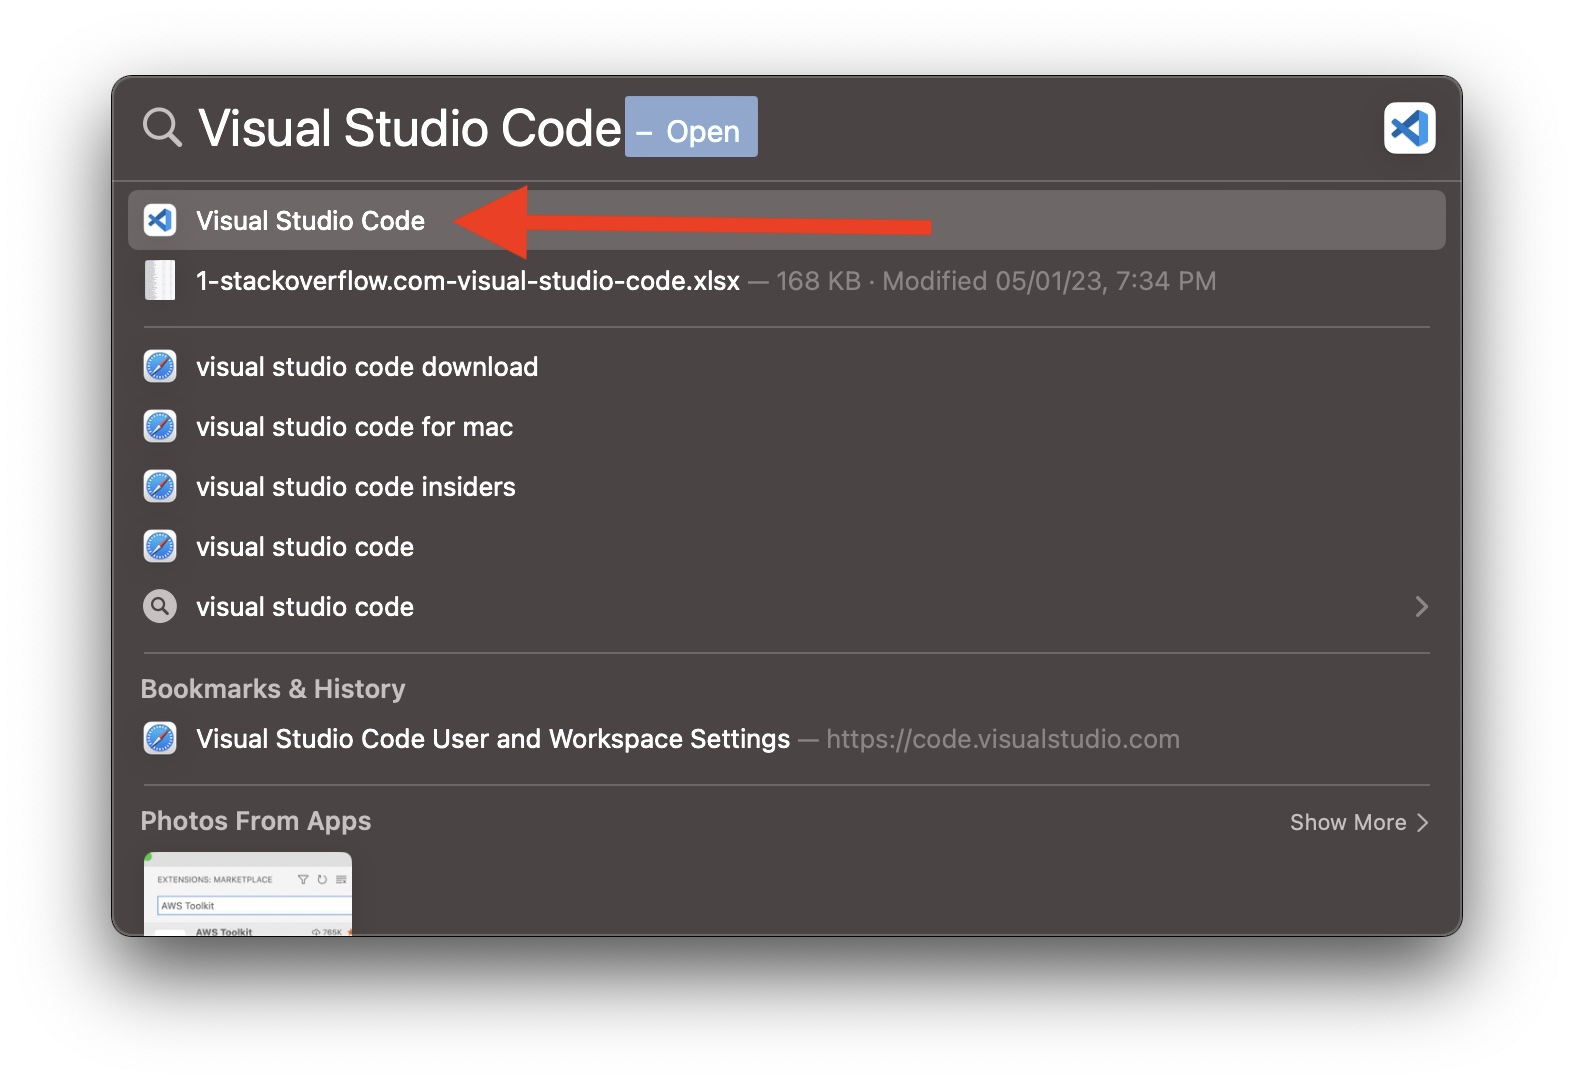 Open Visual Studio Code via Spotlight Search